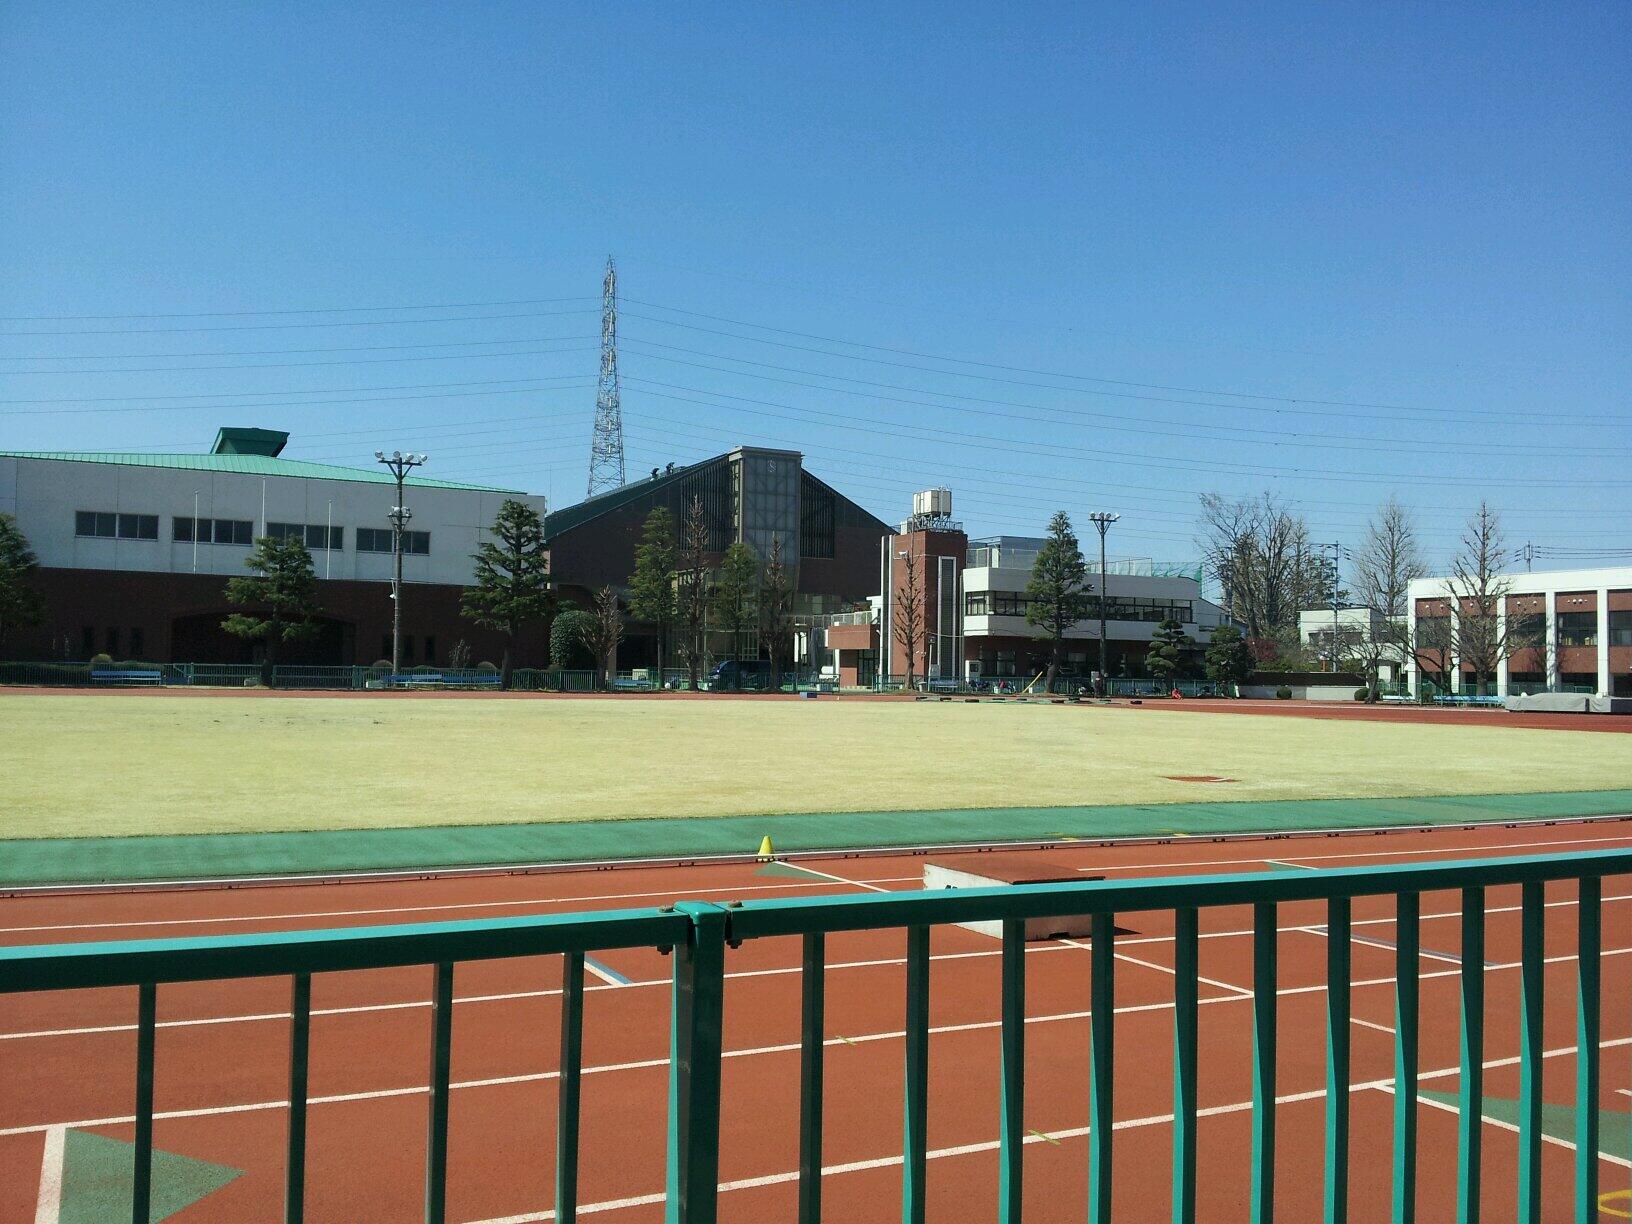 2014日本女子体育大学 (@JWCPE2014) / Twitter